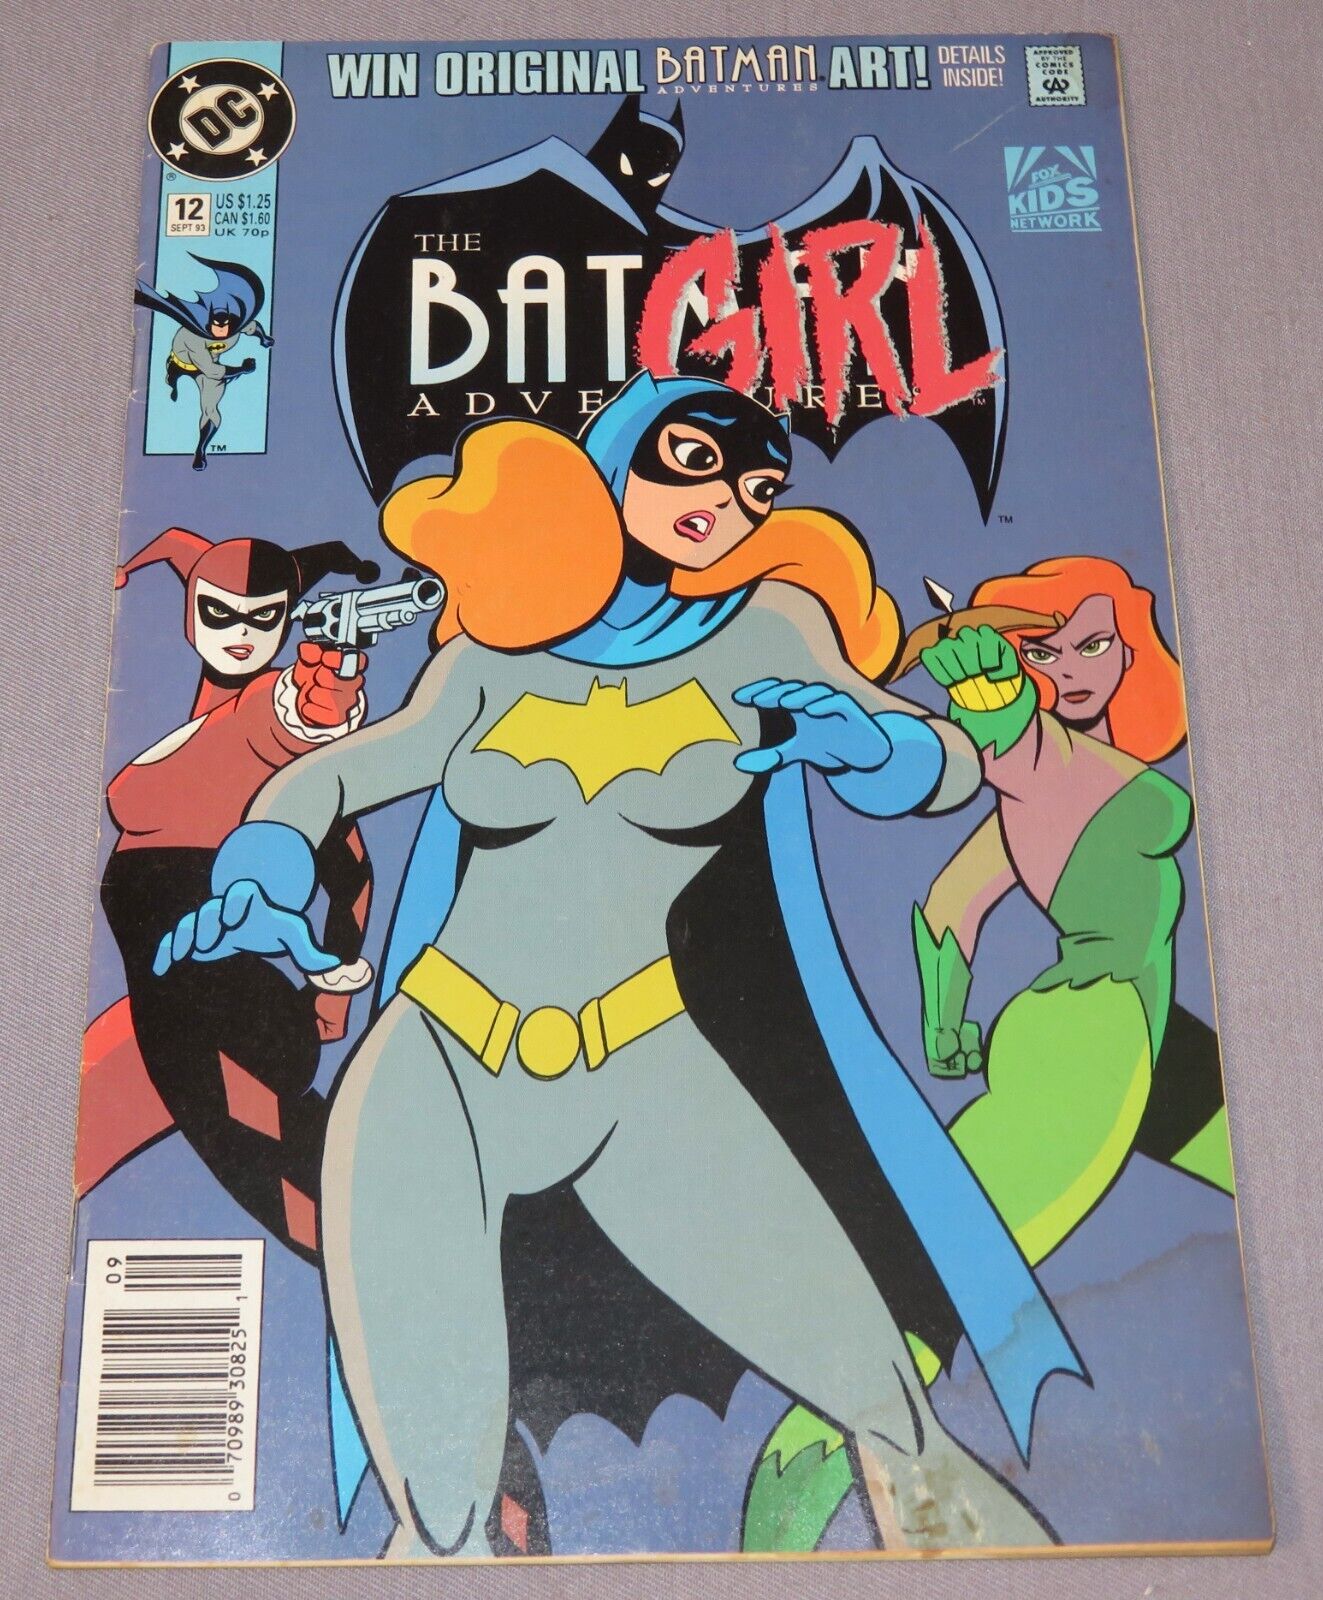 BATMAN ADVENTURES #12 (Harley Quinn 1st appearance) Newsstand DC Comics 1993